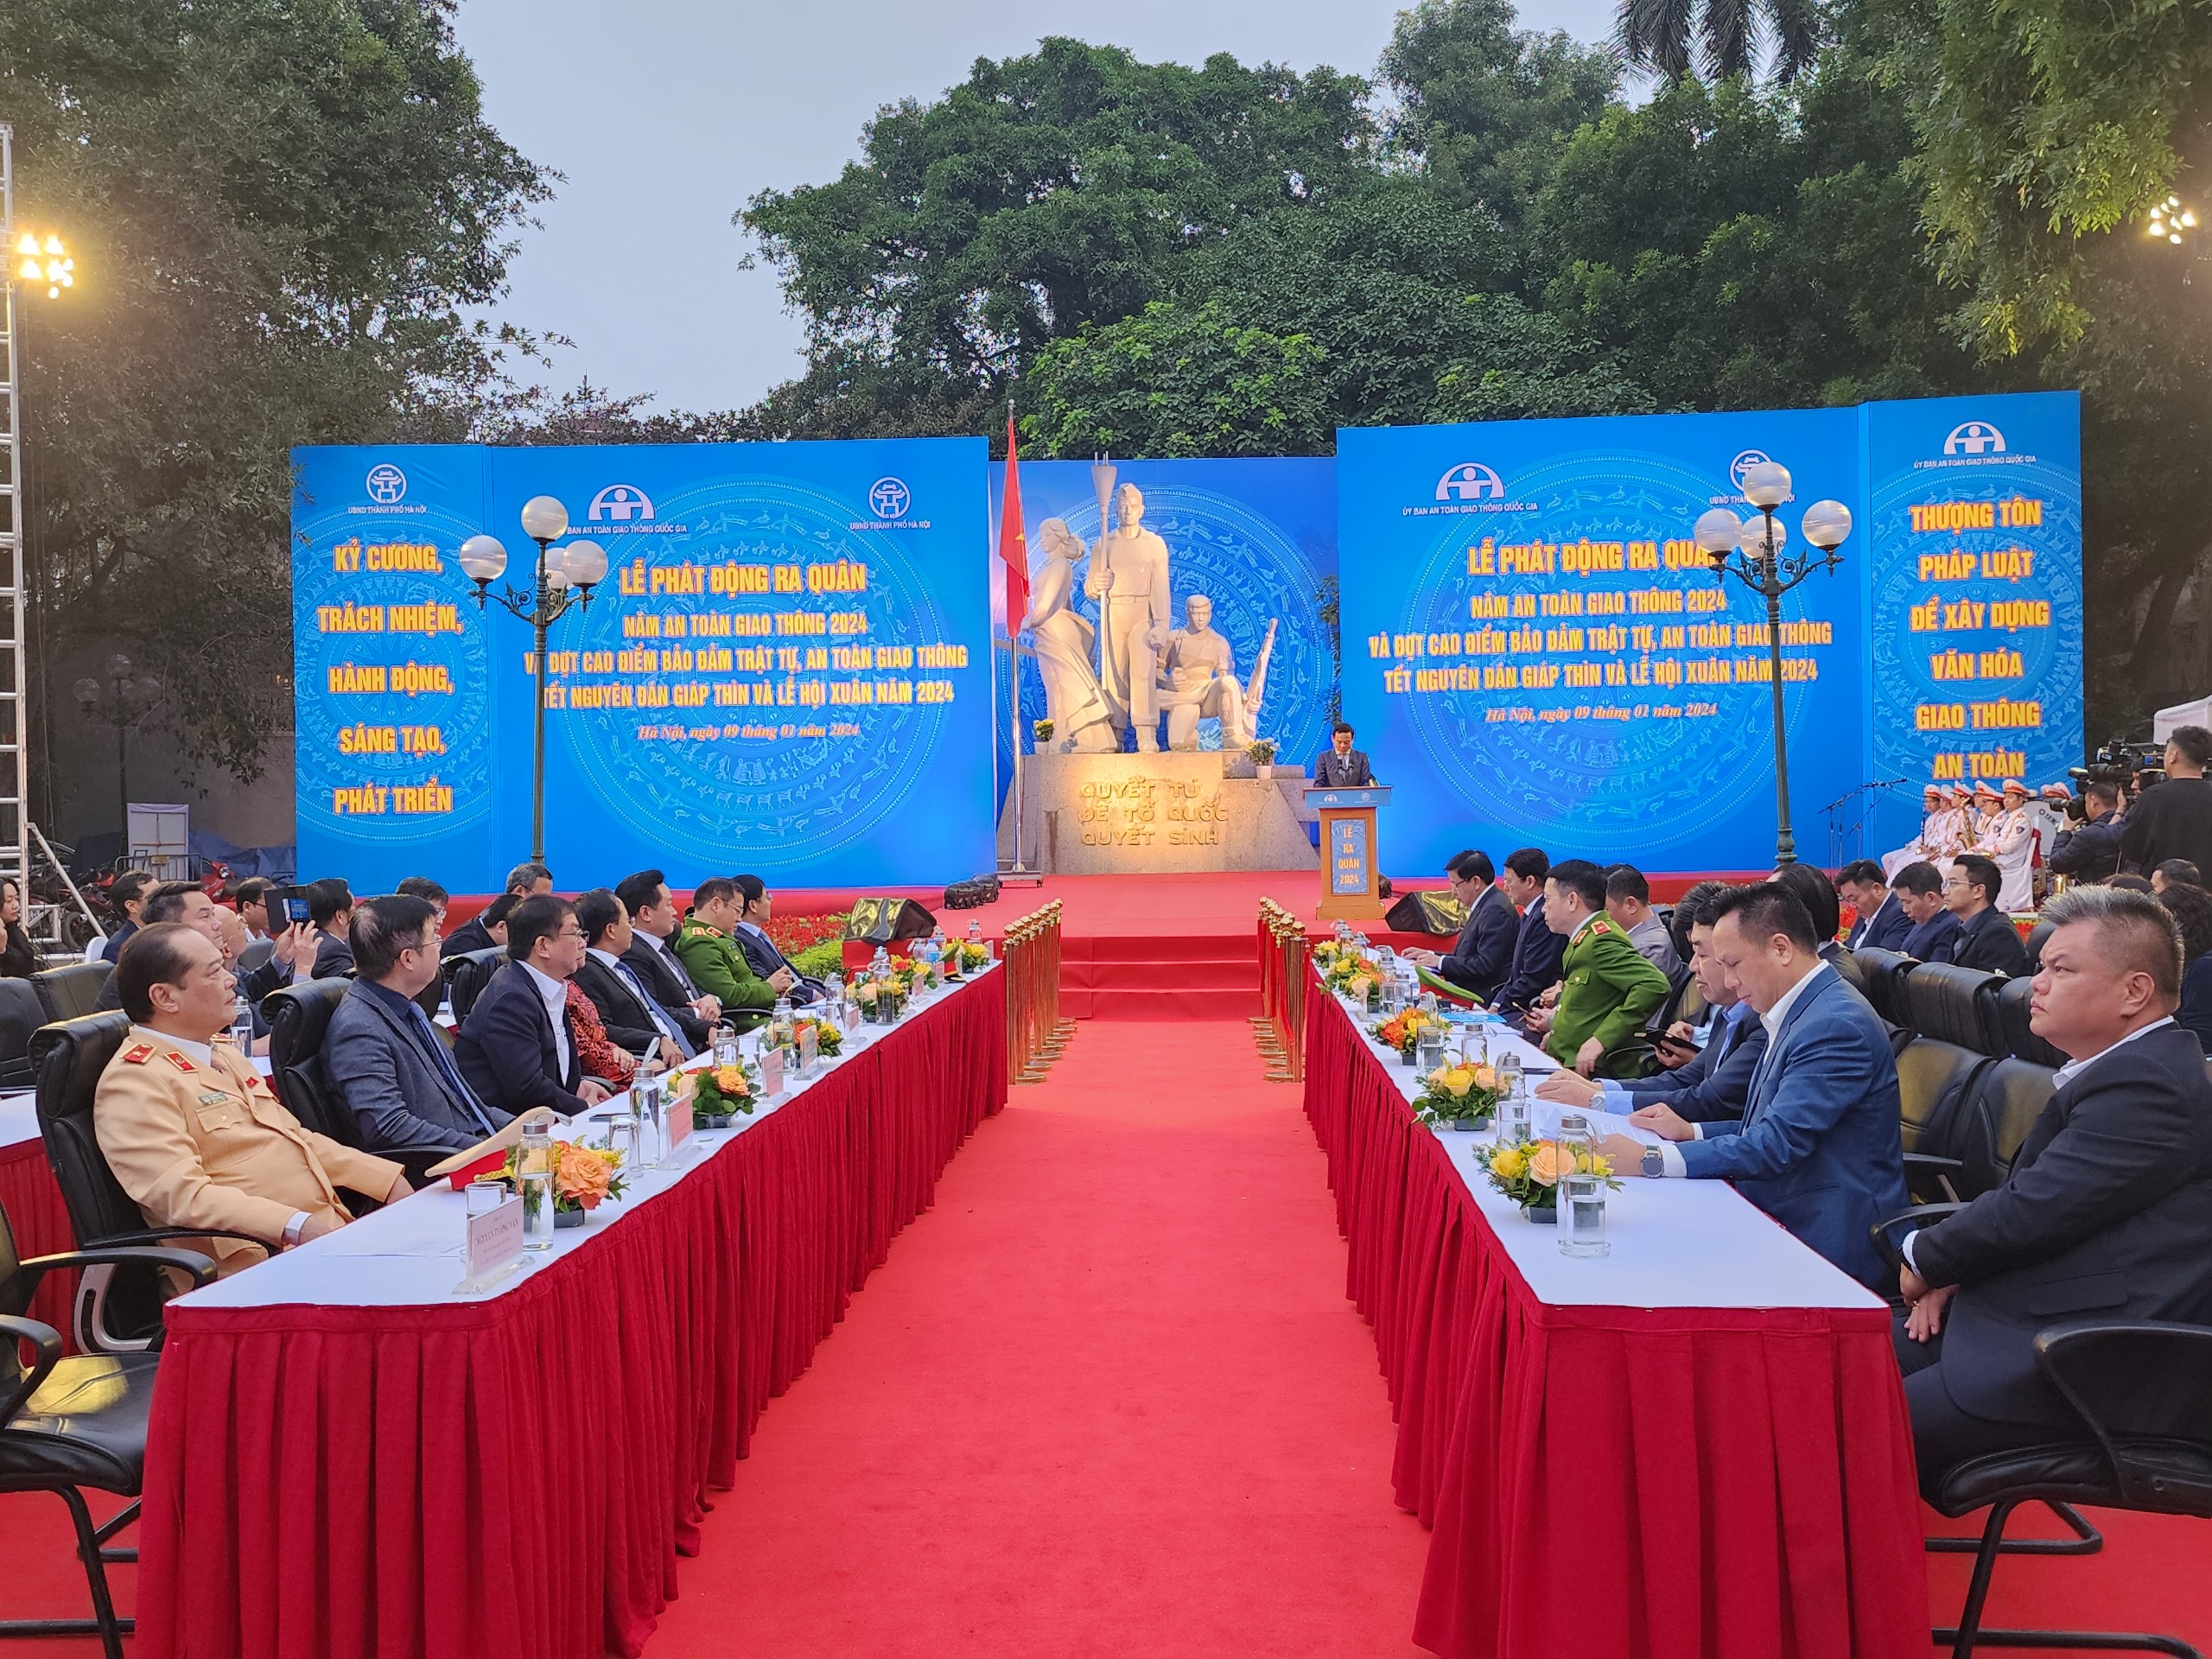 Phó Thủ tướng Trần Lưu Quang: Nêu gương "Thượng tôn pháp luật" để xây dựng văn hóa giao thông an toàn- Ảnh 2.